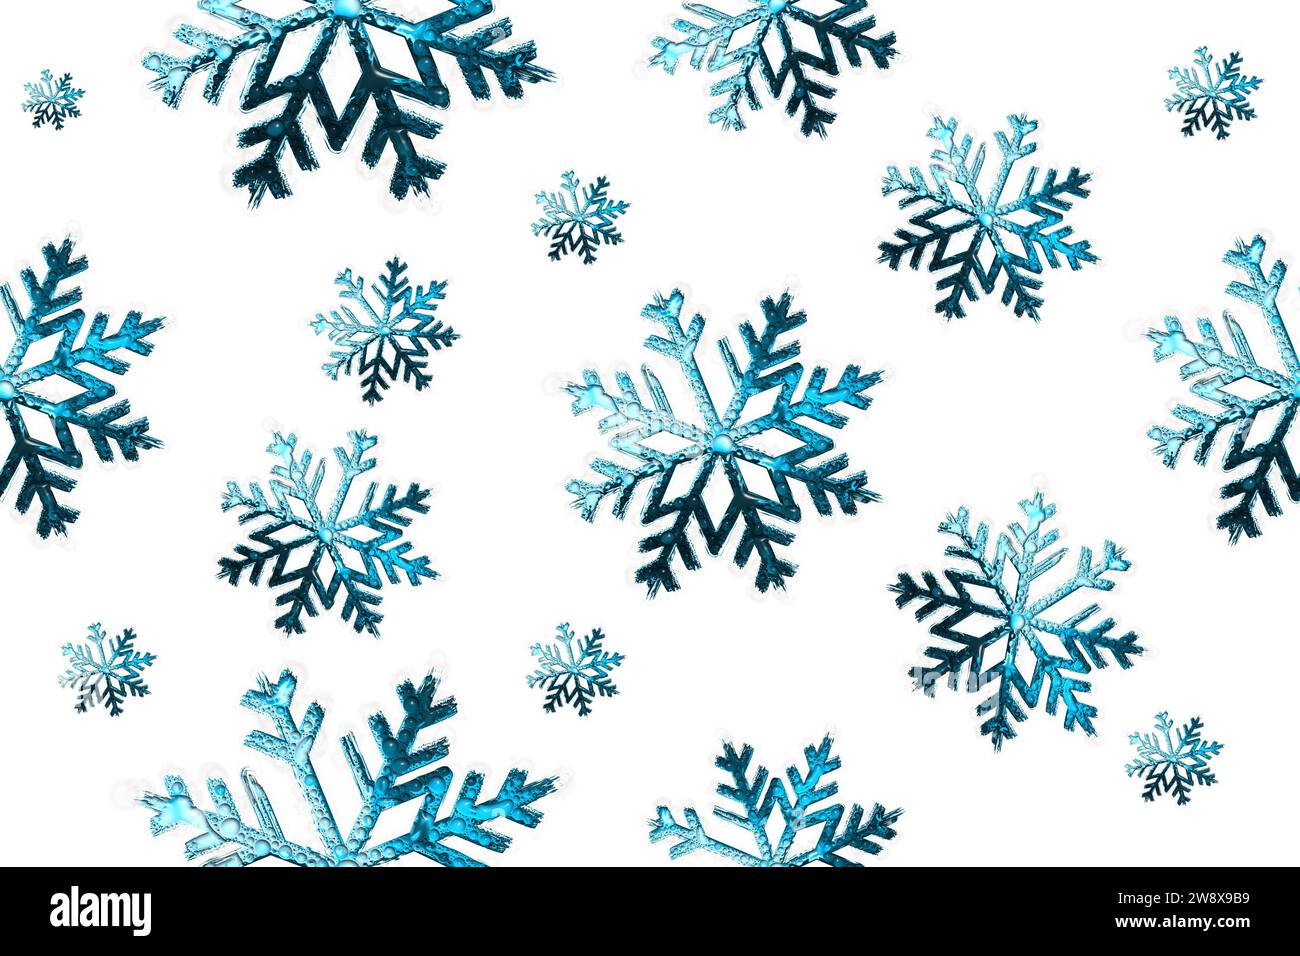 illustration de flocons de neige bleu foncé à motif métallique sans couture Banque D'Images